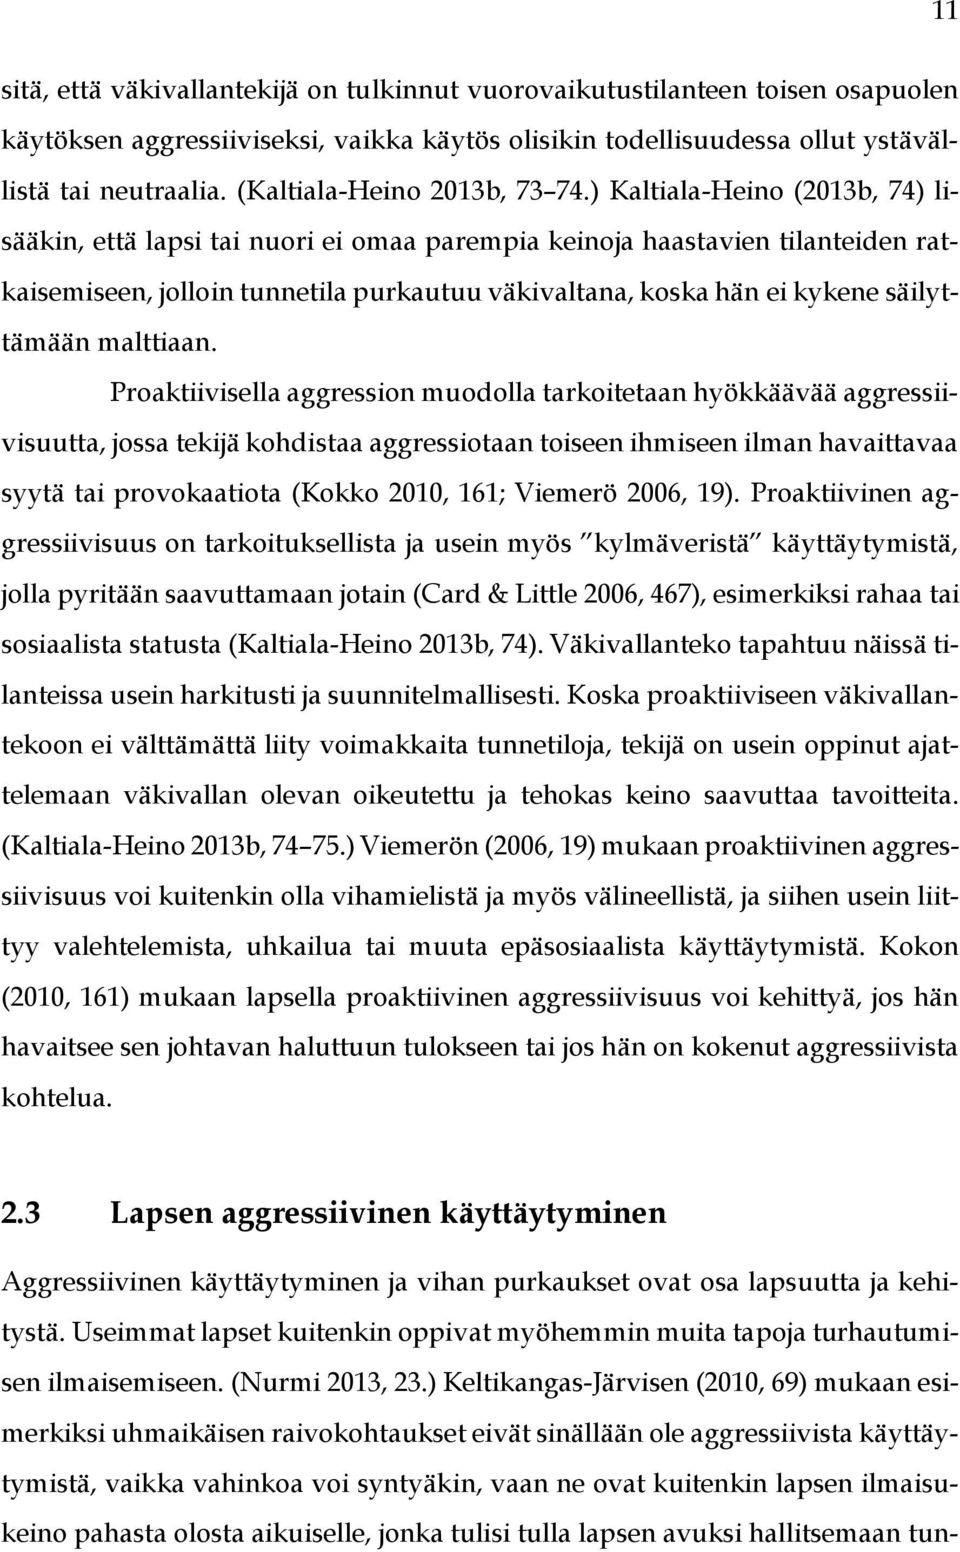 ) Kaltiala-Heino (2013b, 74) lisääkin, että lapsi tai nuori ei omaa parempia keinoja haastavien tilanteiden ratkaisemiseen, jolloin tunnetila purkautuu väkivaltana, koska hän ei kykene säilyttämään